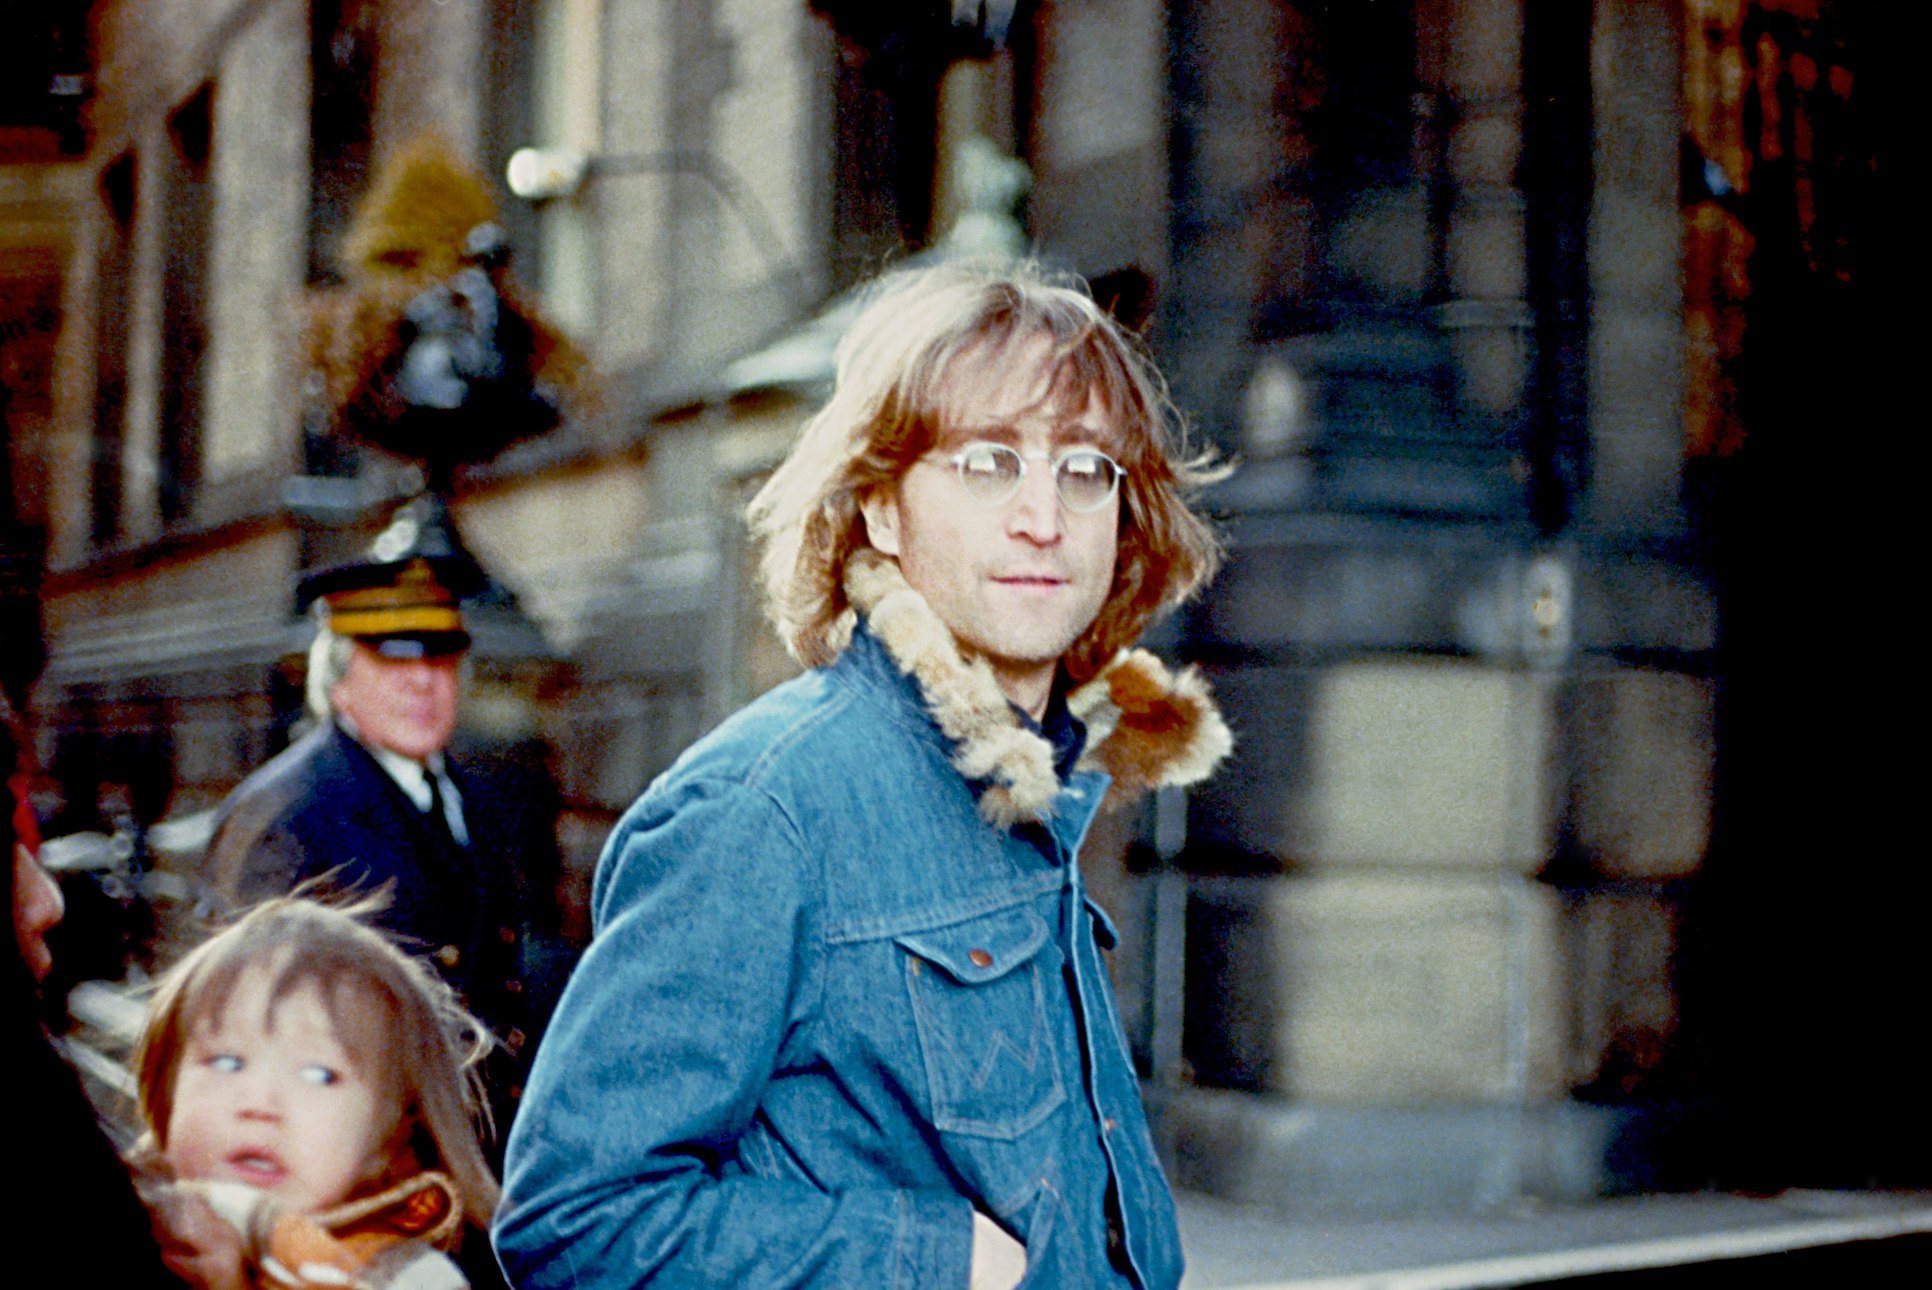 John Lennon poses for a photo in New York